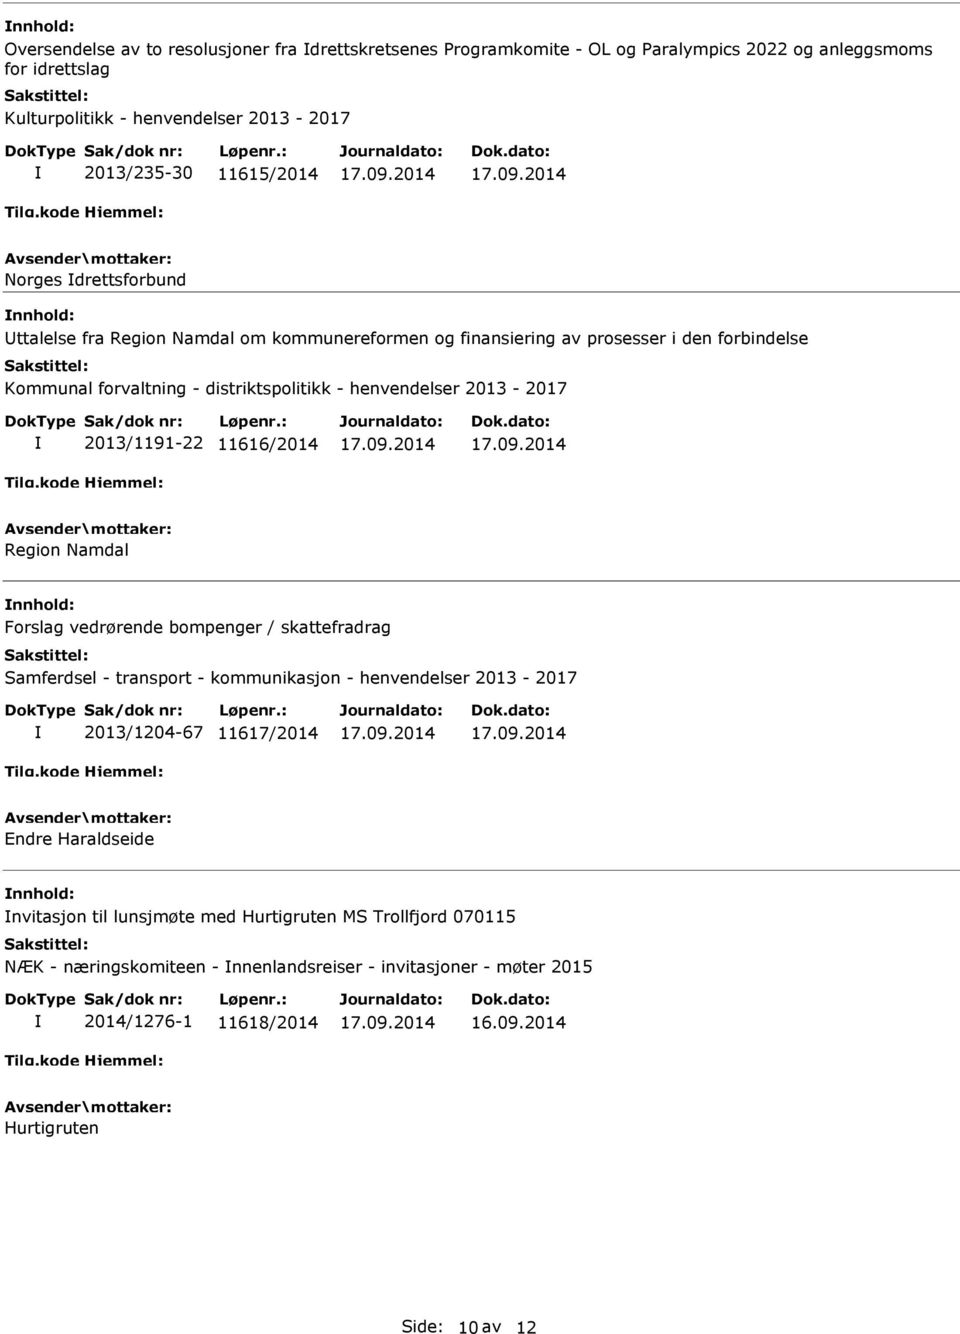 2013/1191-22 11616/2014 Region Namdal Forslag vedrørende bompenger / skattefradrag Samferdsel - transport - kommunikasjon - henvendelser 2013-2017 2013/1204-67 11617/2014 Endre